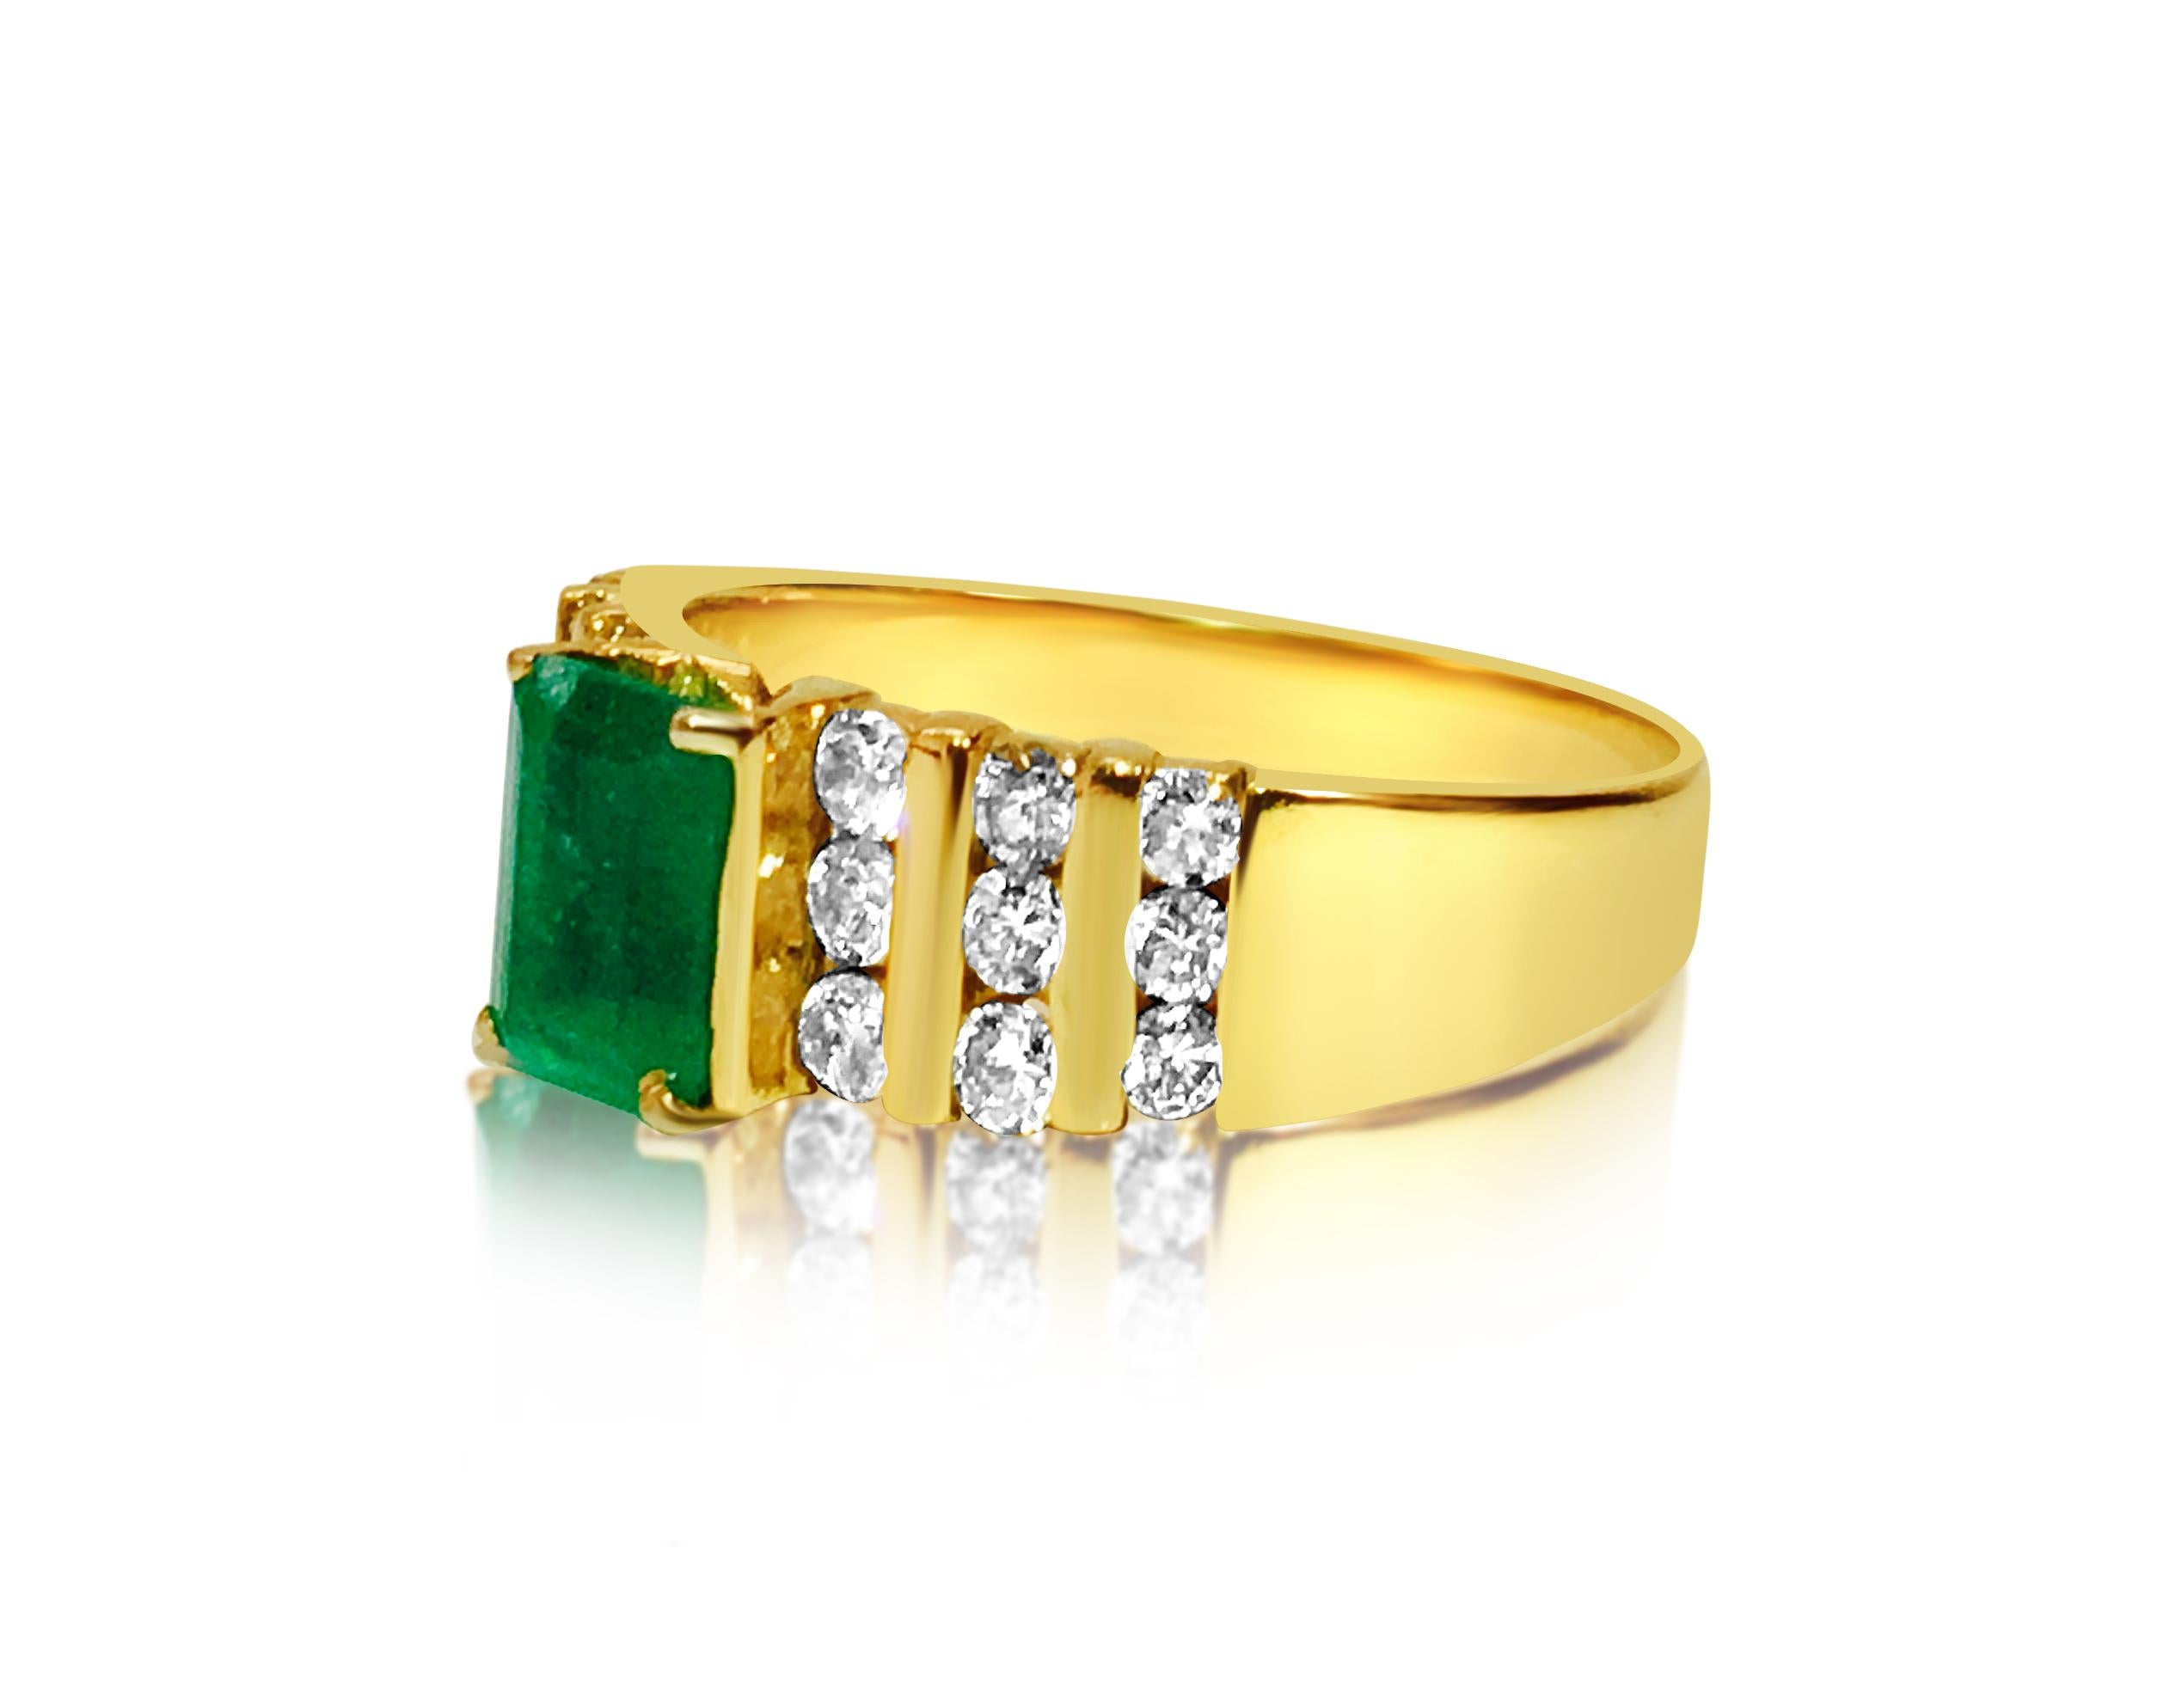 Dieser exquisite Ring aus luxuriösem 14-karätigem Gelbgold enthält insgesamt 0,60 Karat runde Diamanten im Brillantschliff mit SI-Reinheit und G-Farbe, die elegant in einer Kanalfassung gefasst sind. In seiner Mitte glänzt ein prächtiger